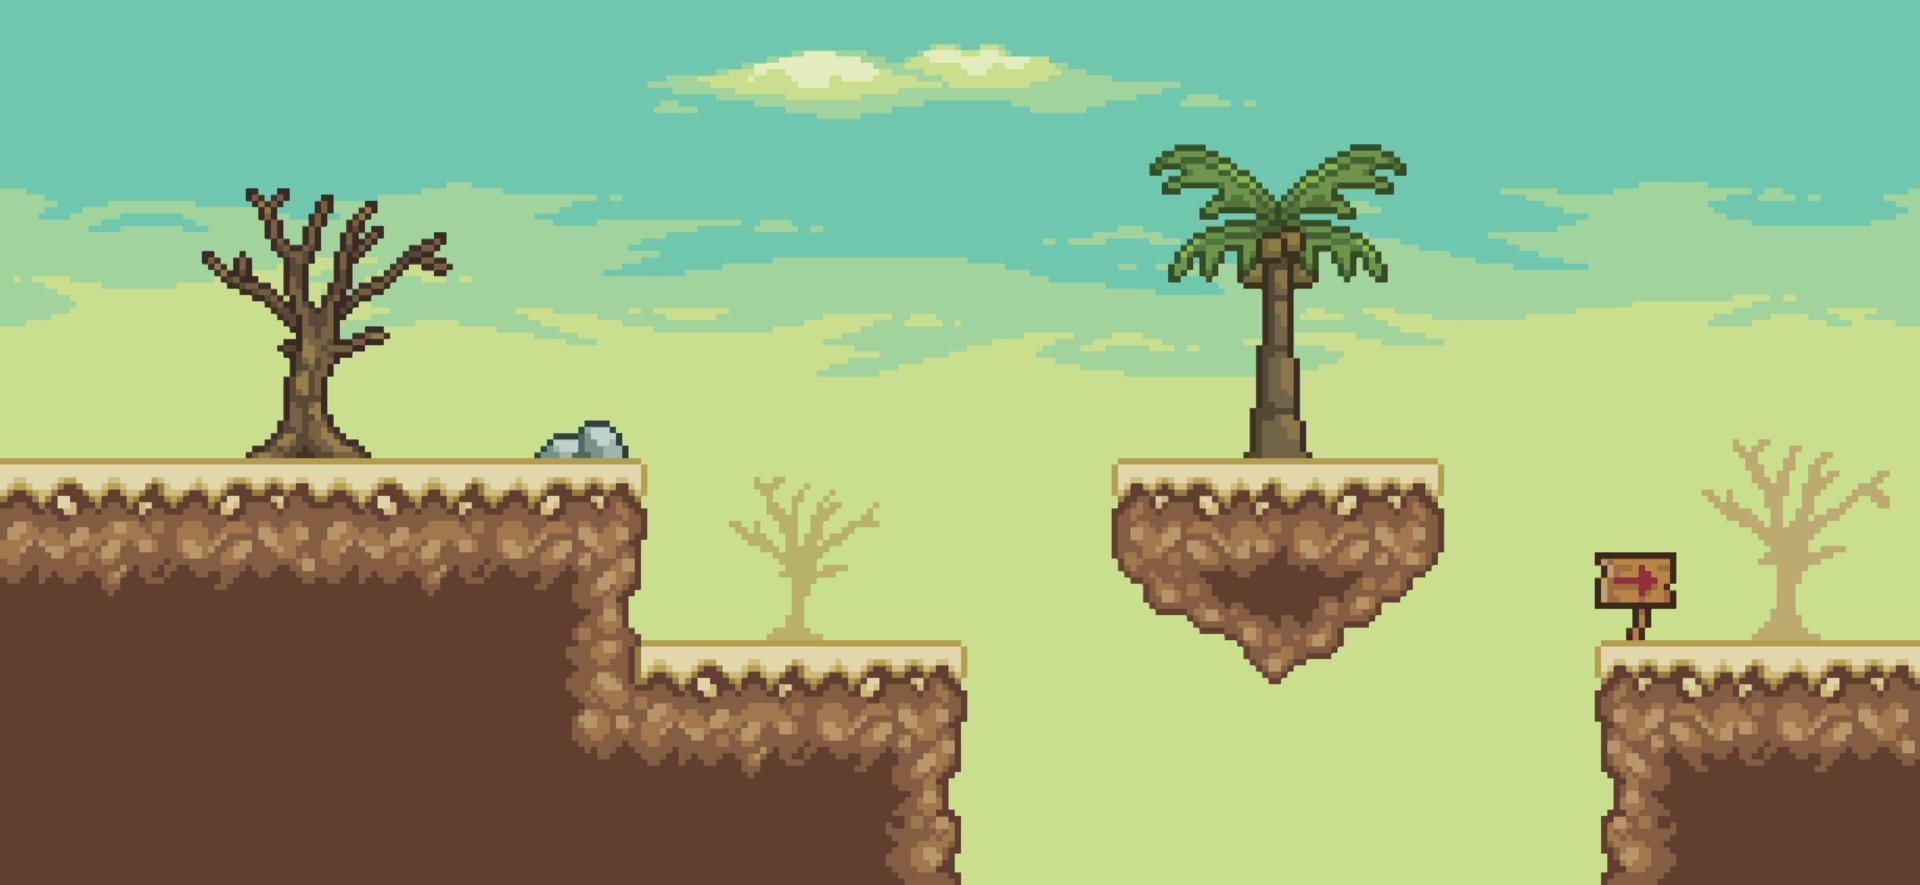 escena del juego del desierto de pixel art con isla flotante, palmera, cactus, fondo de árbol de 8 bits vector